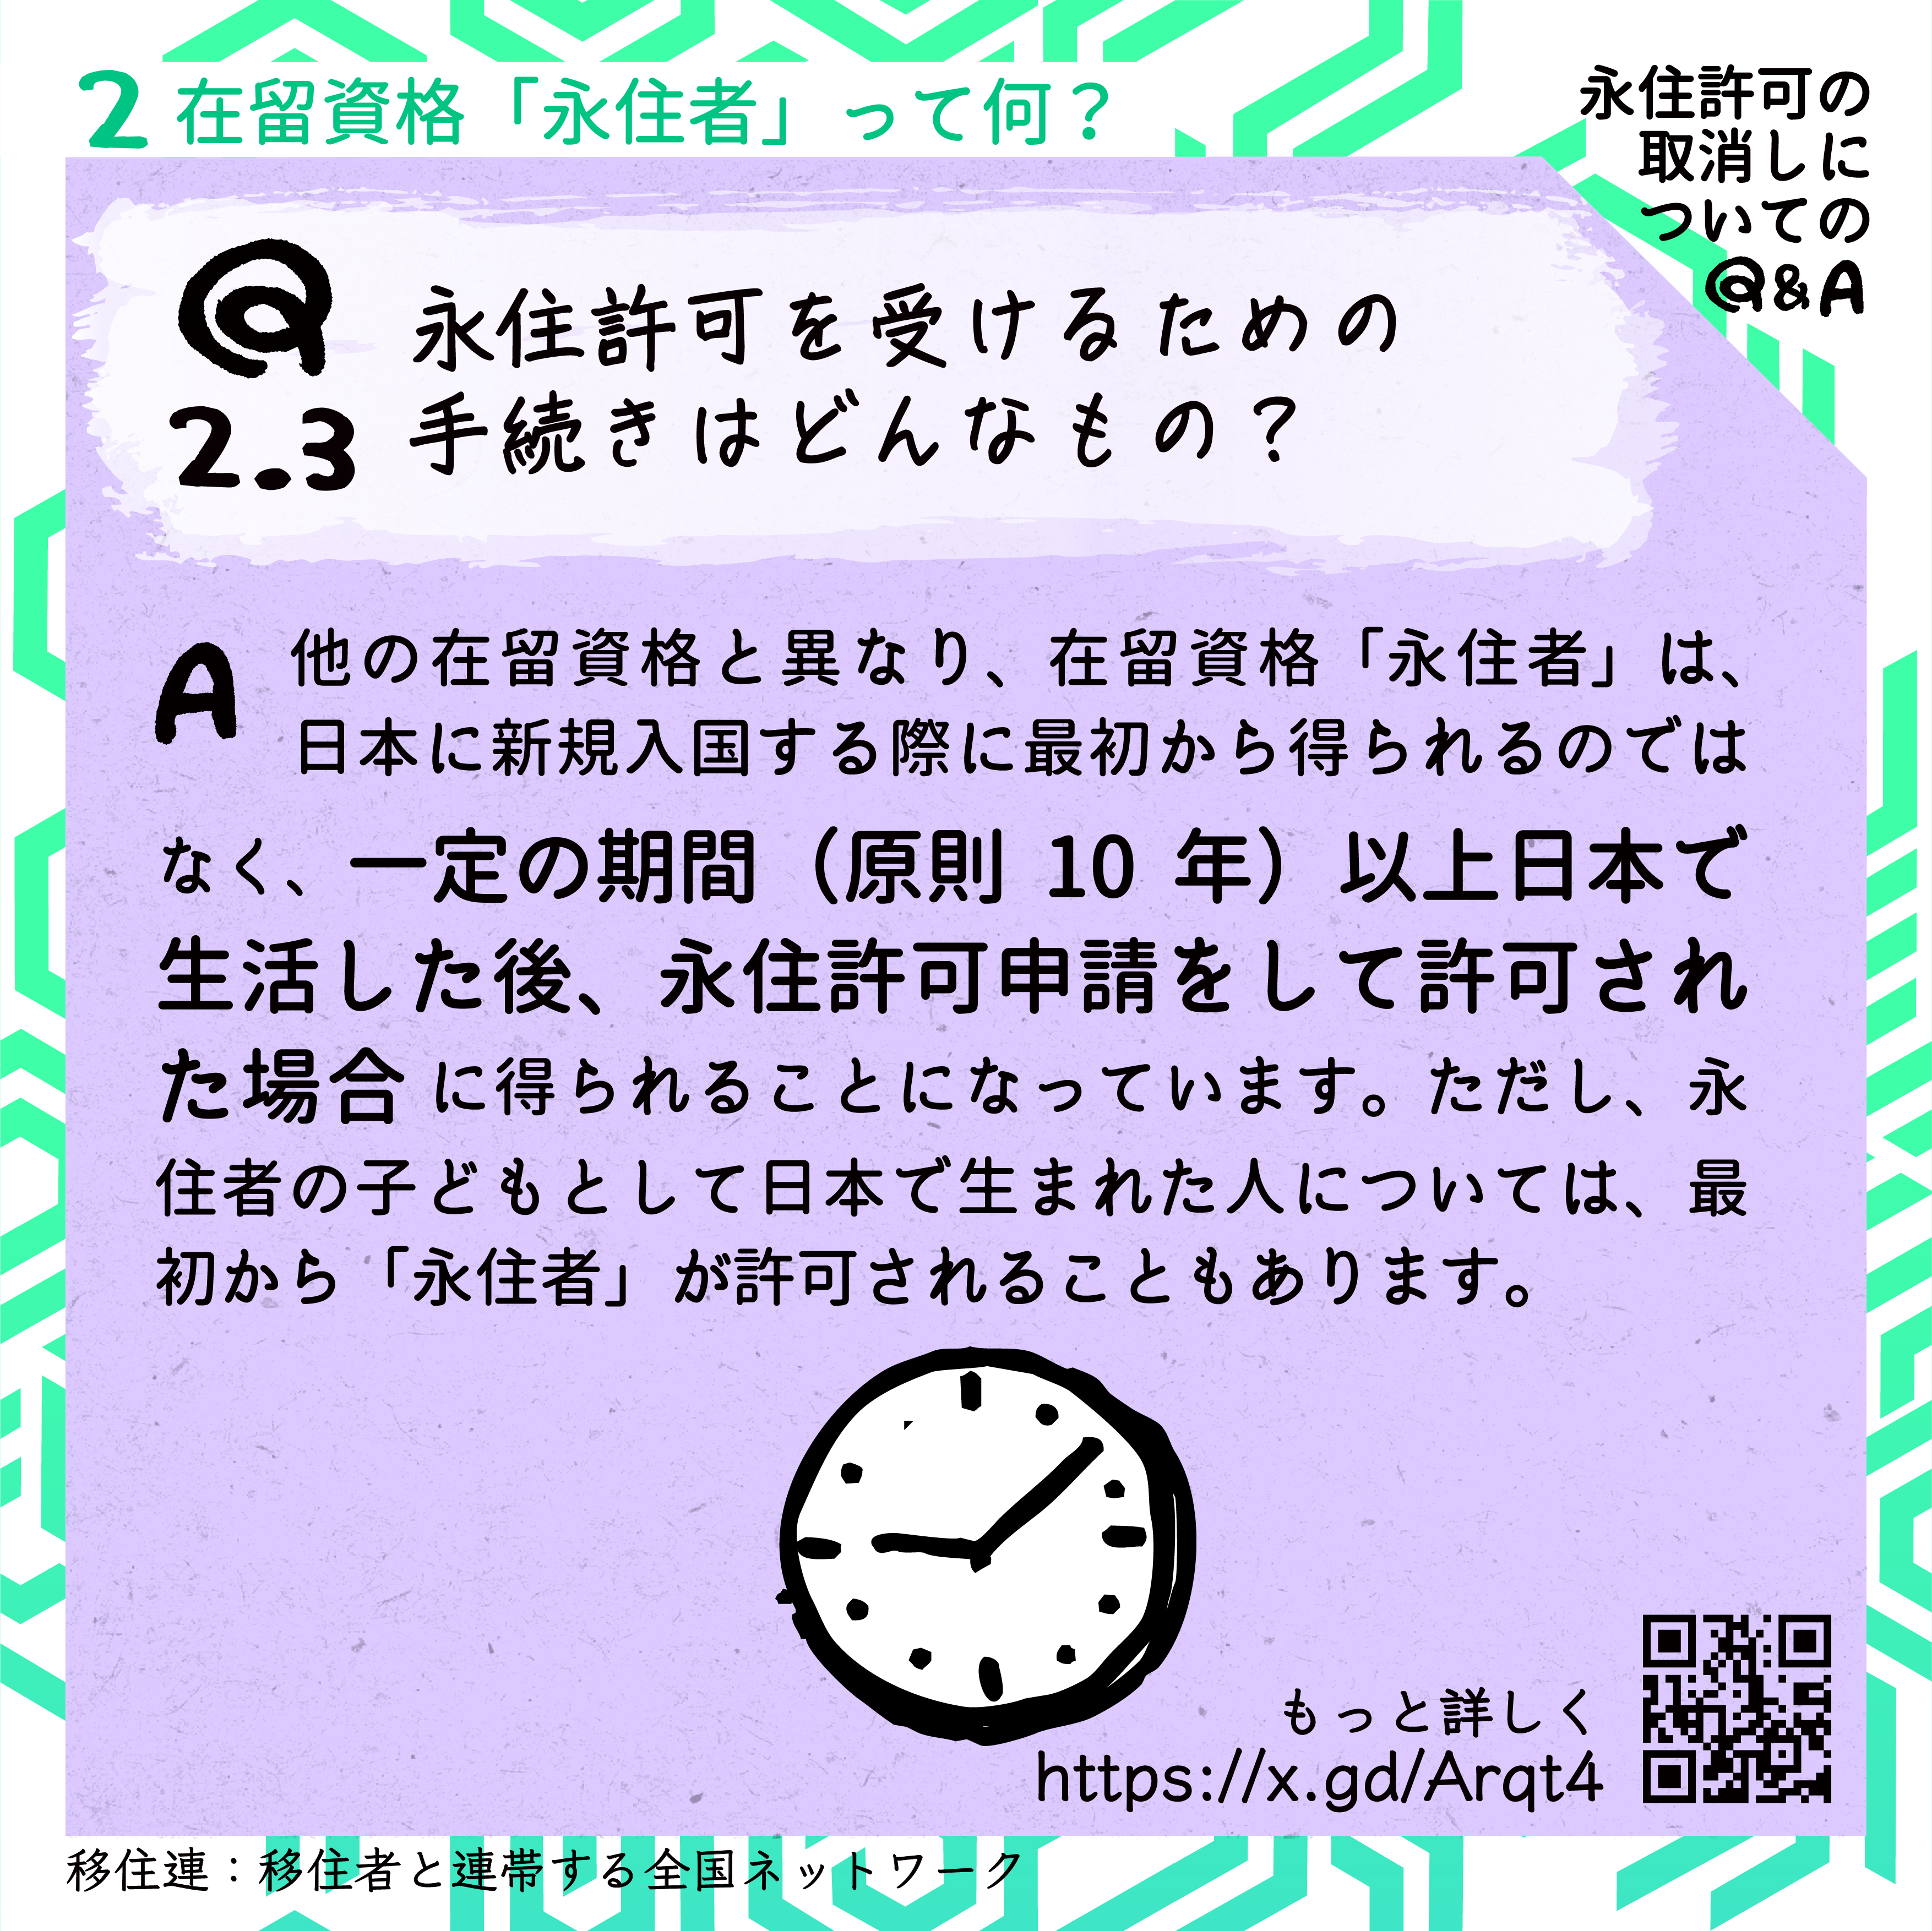 ２　在留資格「永住者」って何？
Q2.3：永住許可を受けるための手続きはどんなもの？
A:他の在留資格と異なり、在留資格「永住者」は、日本に新規入国する際に最初から得られるのではなく、一定の期間（原則10年）以上日本で生活した後、永住許可申請をして許可された場合に得られることになっています。ただし、永住者の子どもとして日本で生まれた人については、最初から「永住者」が許可されることもあります。

永住許可の取消しについての Q&A
もっと詳しく→URL https://x.gd/Arqt4　とそのQRコード
移住連：移住者と連帯する全国ネットワーク
